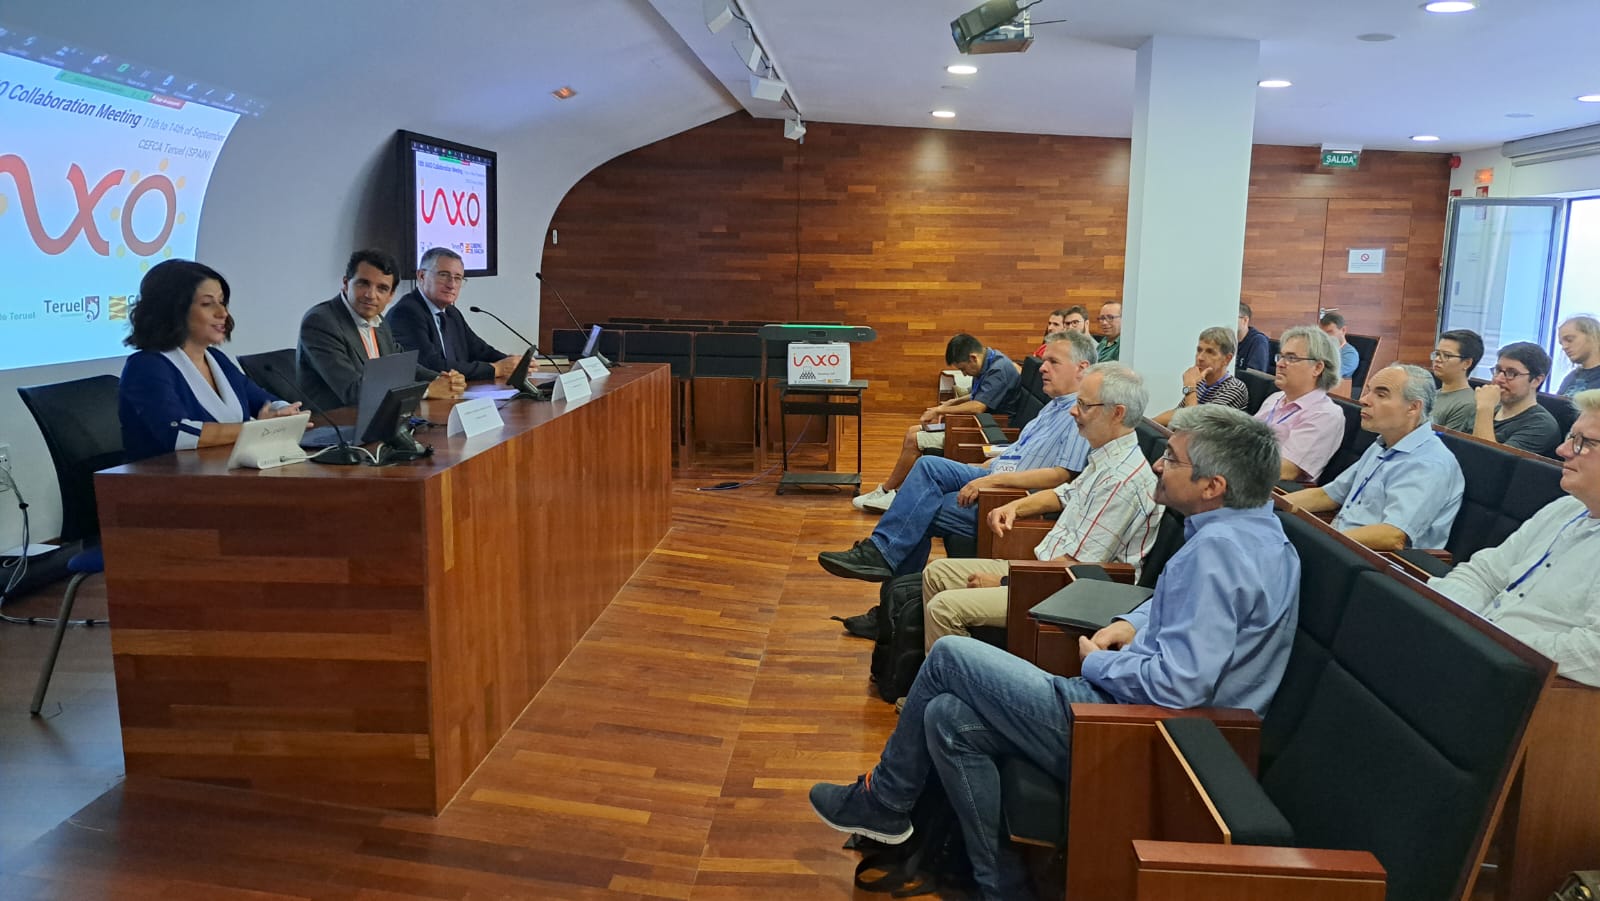 La alcaldesa invita a disfrutar del cielo de Teruel a los cientÃ­ficos asistentes al congreso IAXO